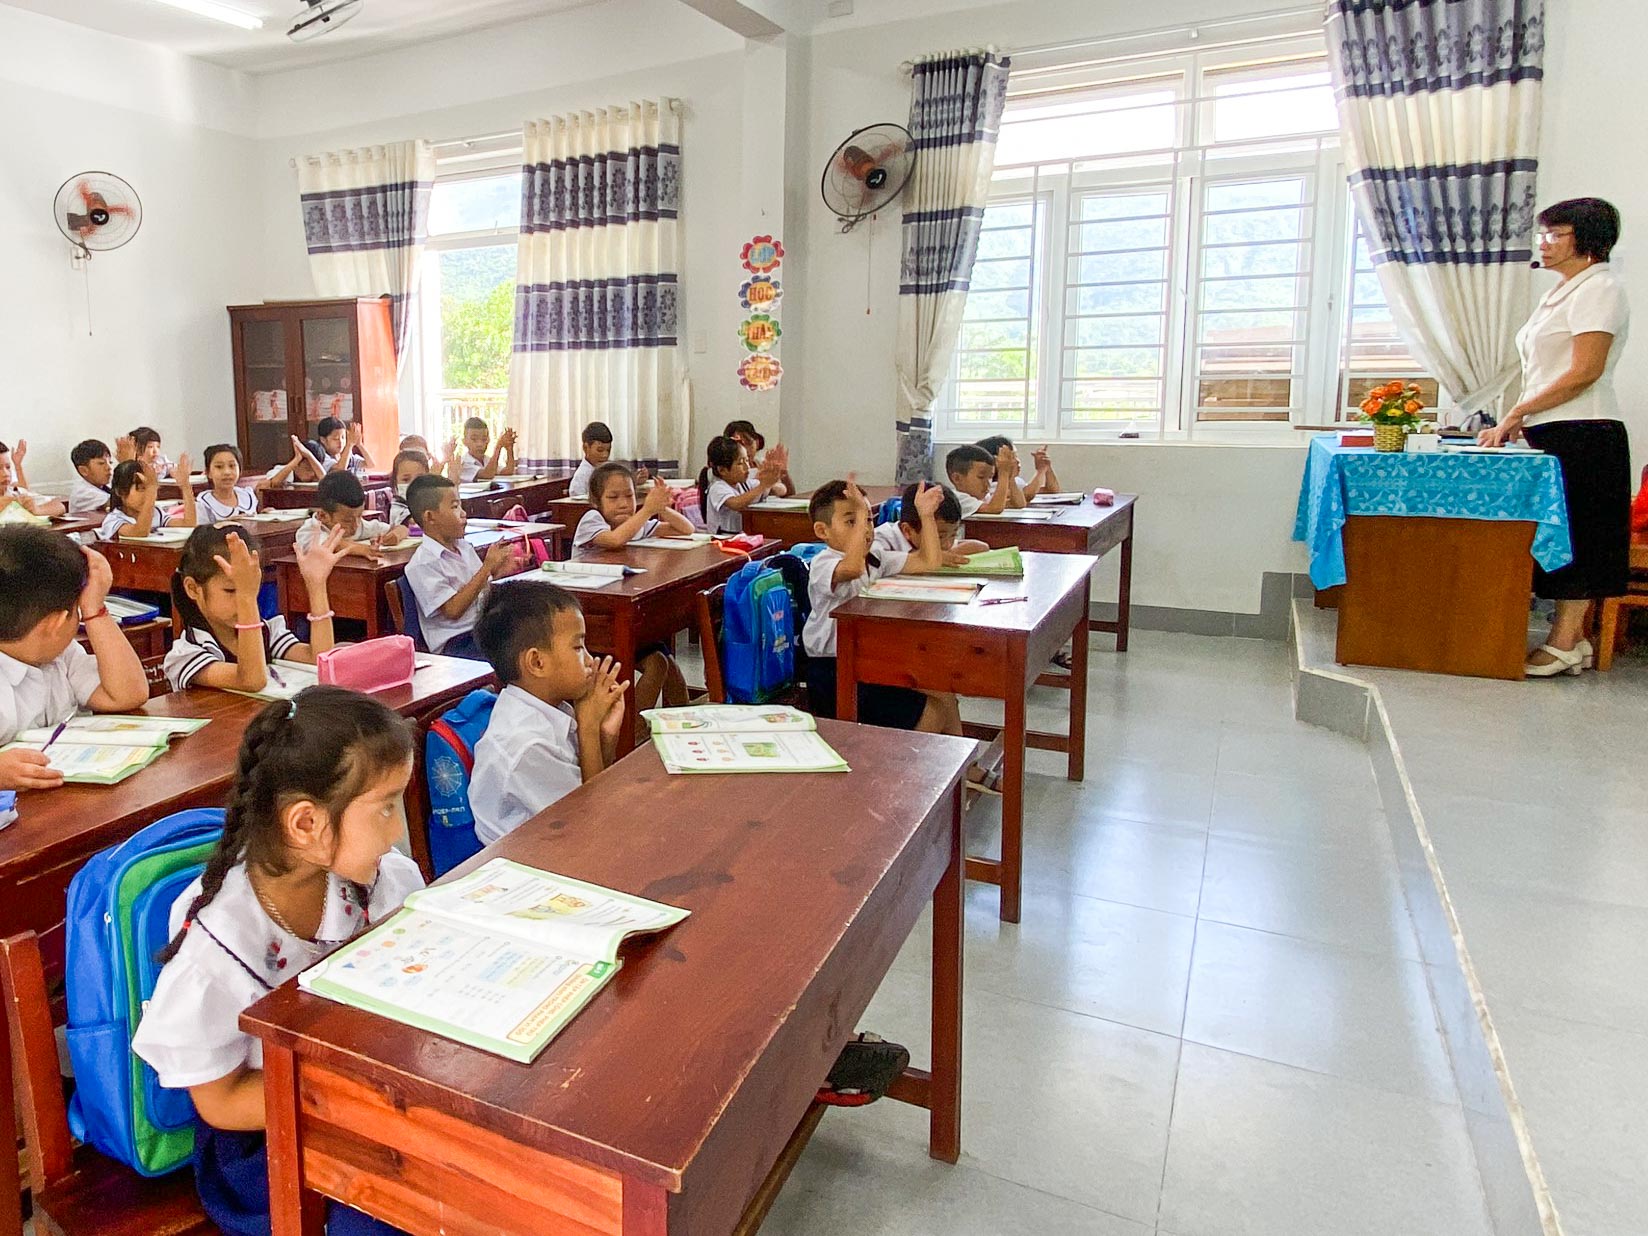 Trường học xây mới 25 tỉ: Cô giáo vỡ òa hạnh phúc khi học sinh đi học - Ảnh 4.